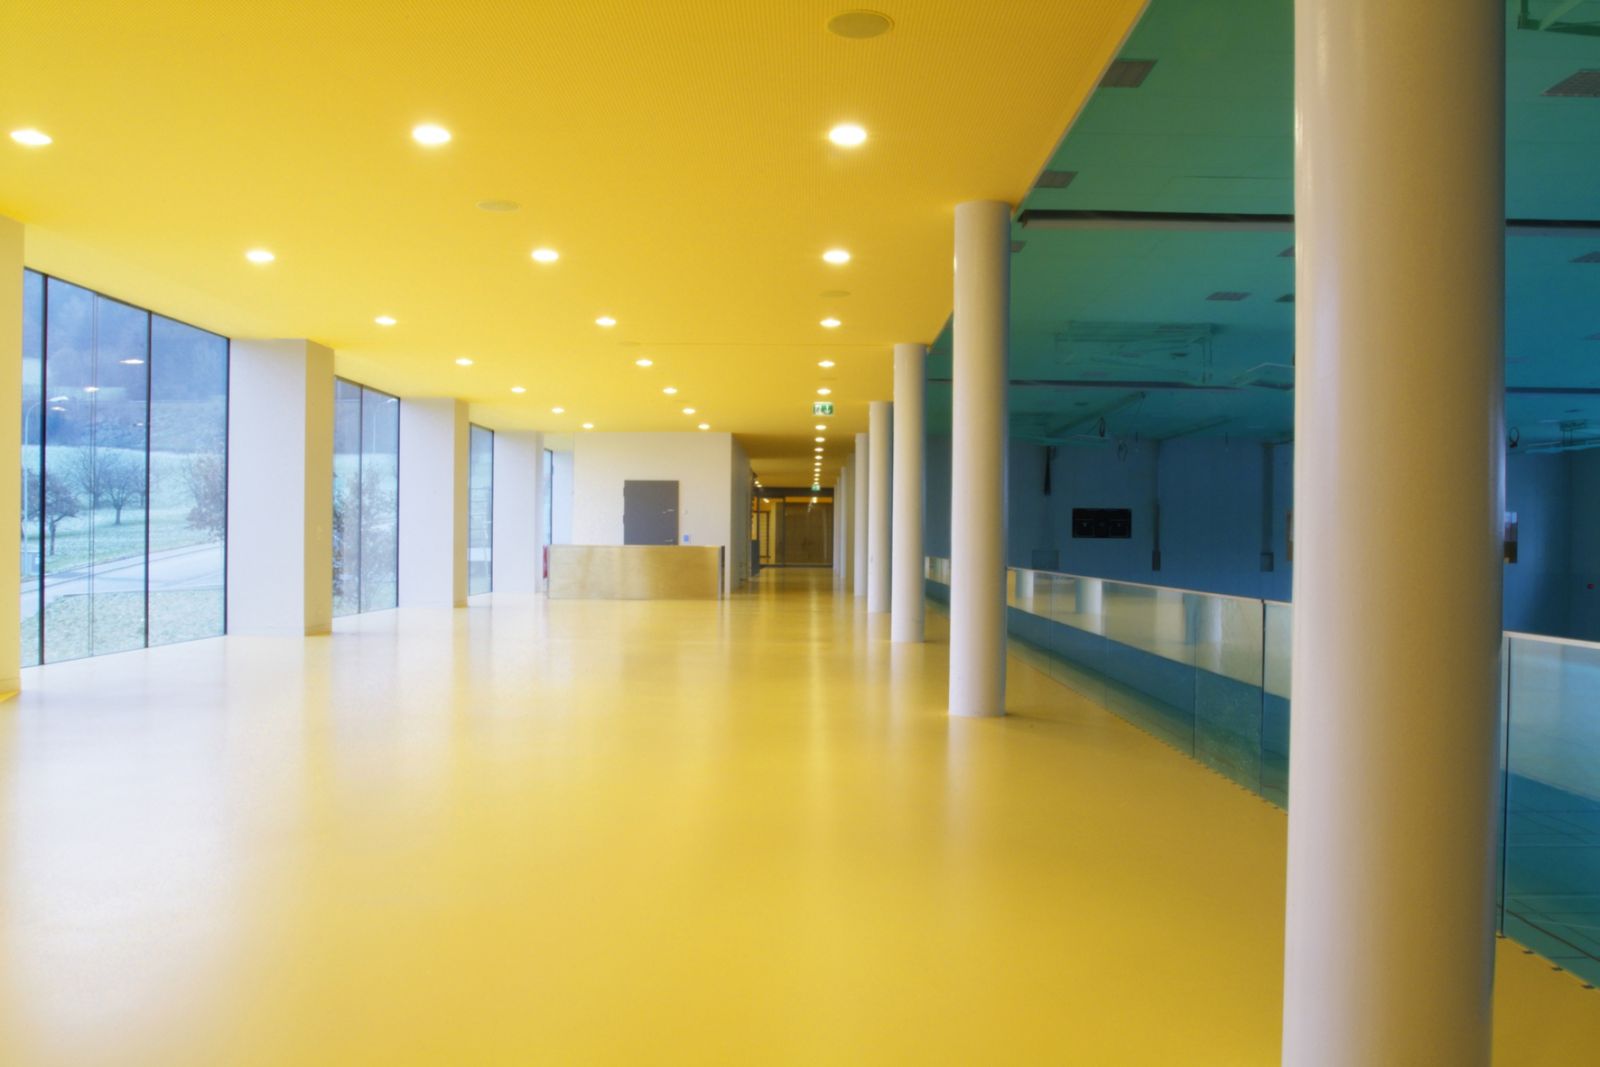 Sơn sàn epoxy màu vàng cũng là một trong những gam màu được lựa chọn nhiều cho sàn nhà xưởng